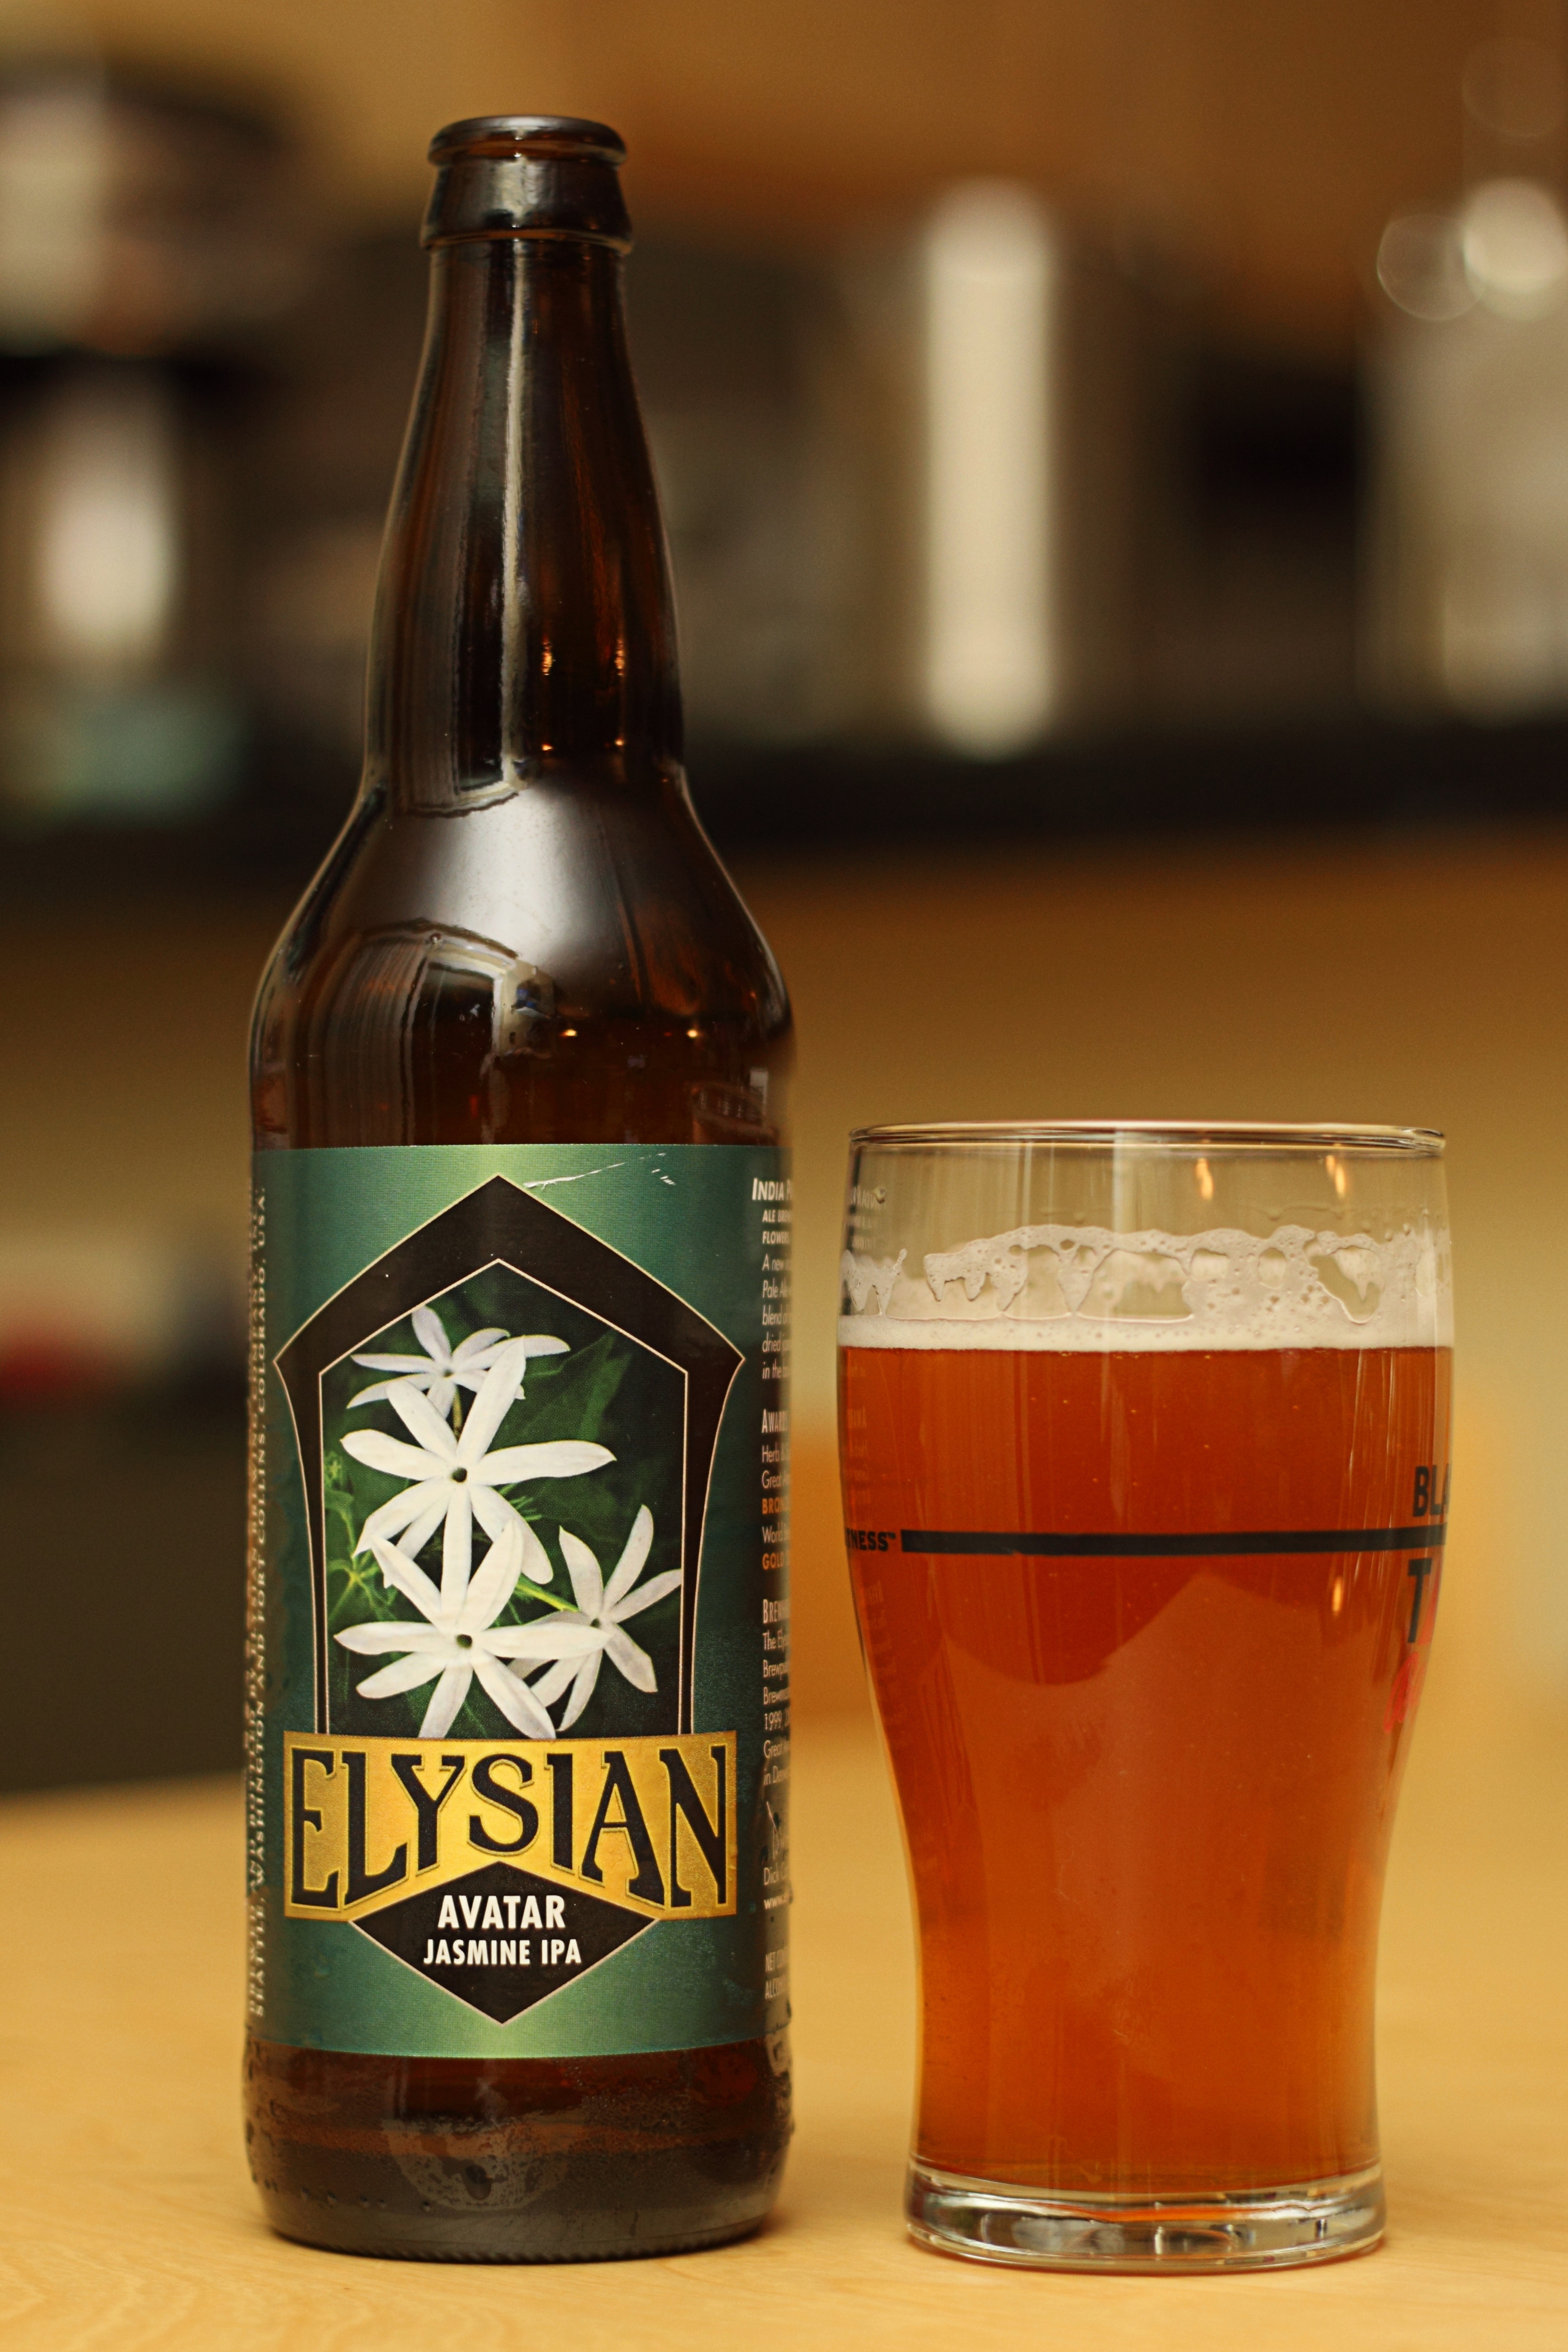 Elysian Brewing Company – Avatar Jasmine IPA